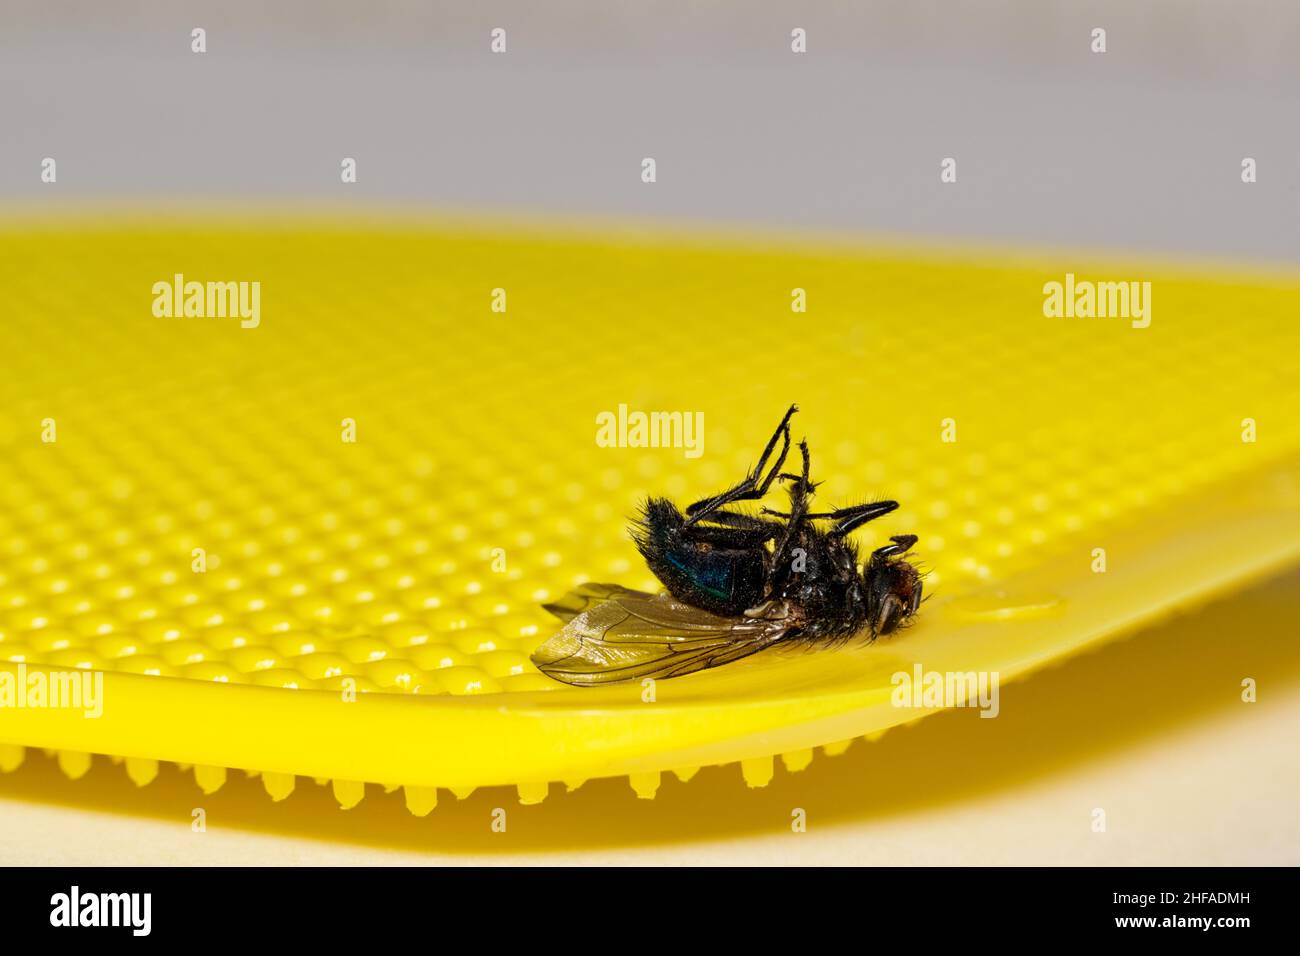 Dead Bluebottle survolez une flyswatter jaune avec un fond blanc Uni et un espace de copie.Image conceptuelle de faible profondeur de champ. Banque D'Images